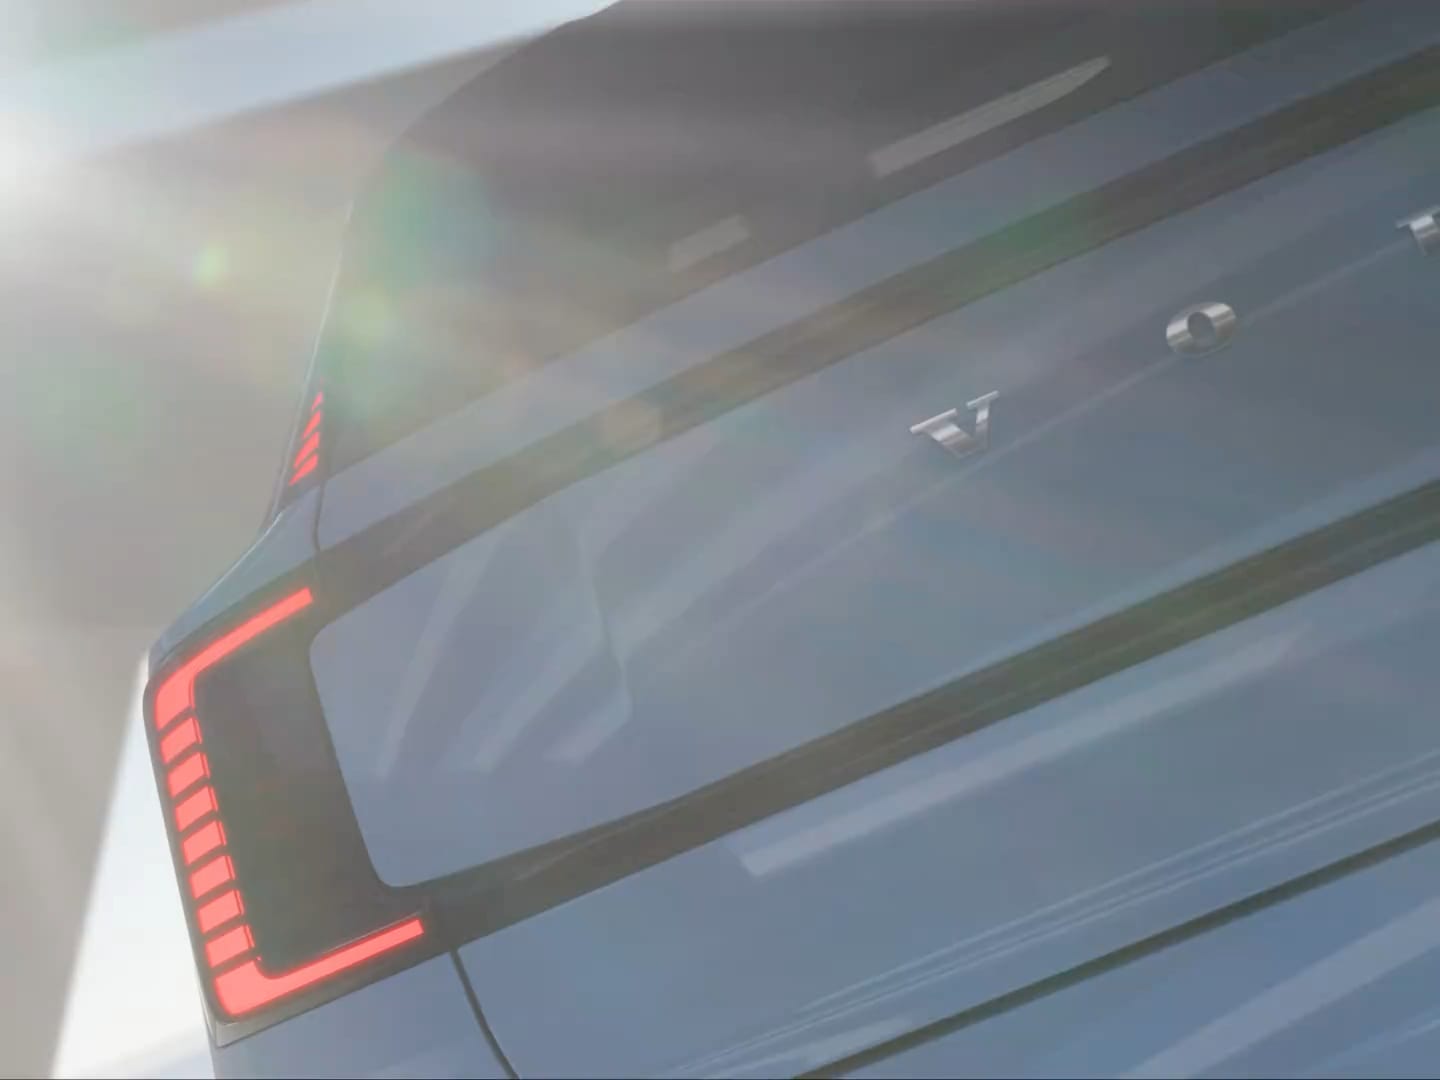 المصابيح الخلفية والأمامية لفولفو EX30 المتحركة التي تنعكس من خلال الضوء على السقف.